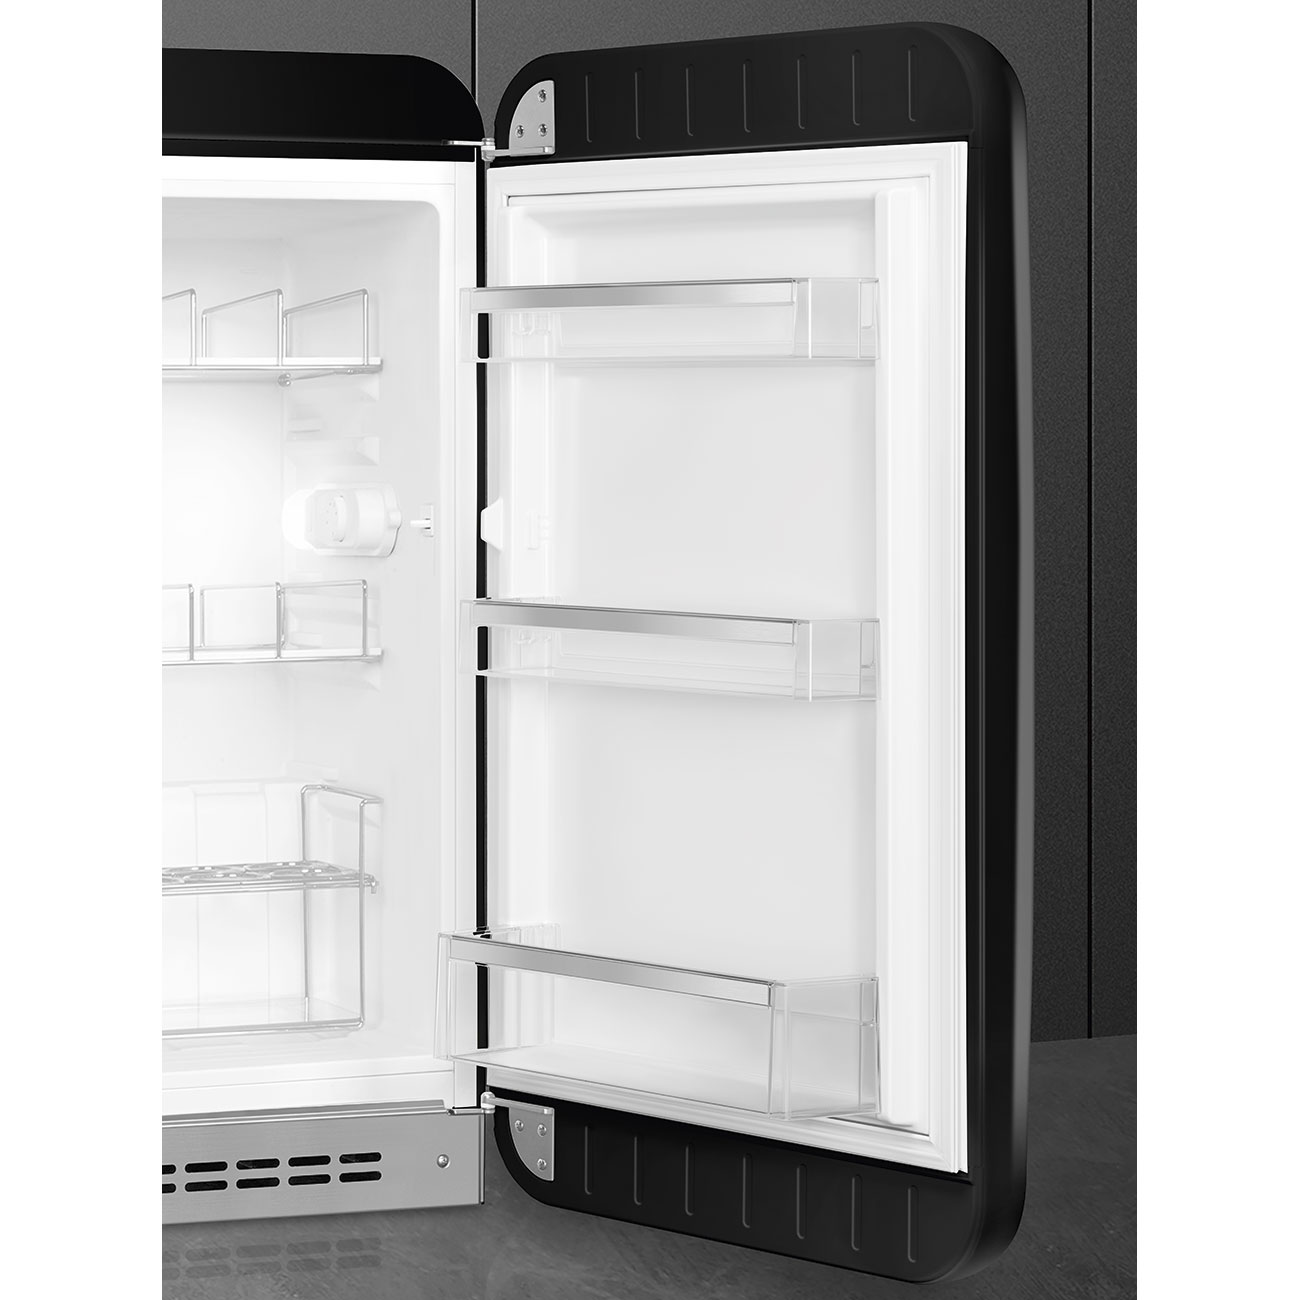 Black refrigerator - Smeg_7